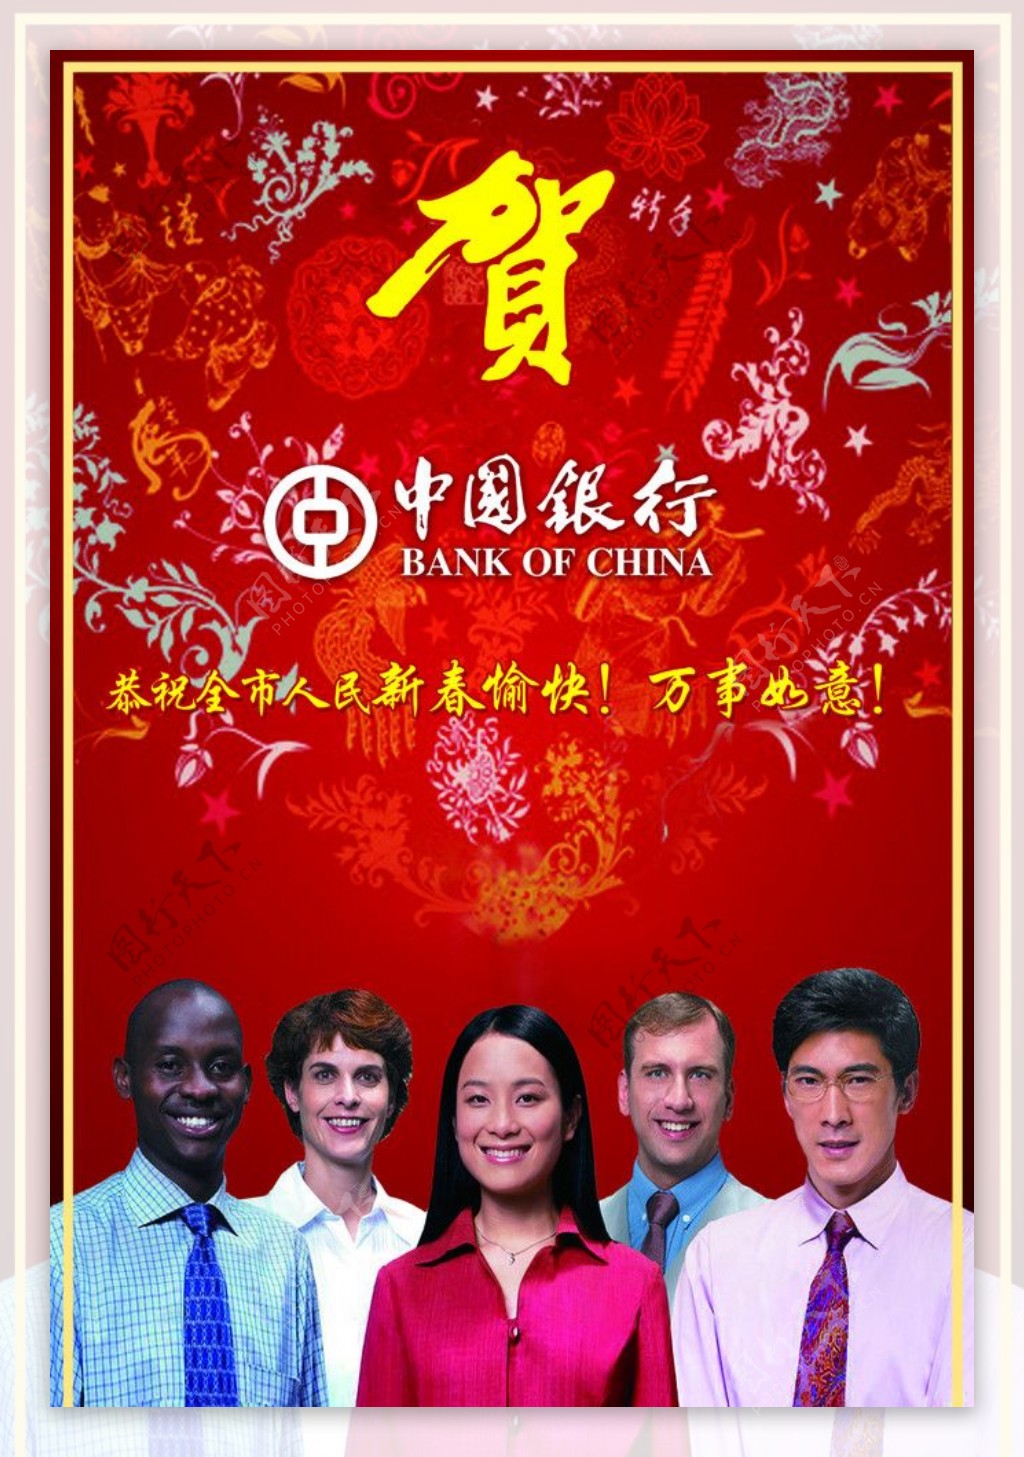 中国银行贺年广告图片